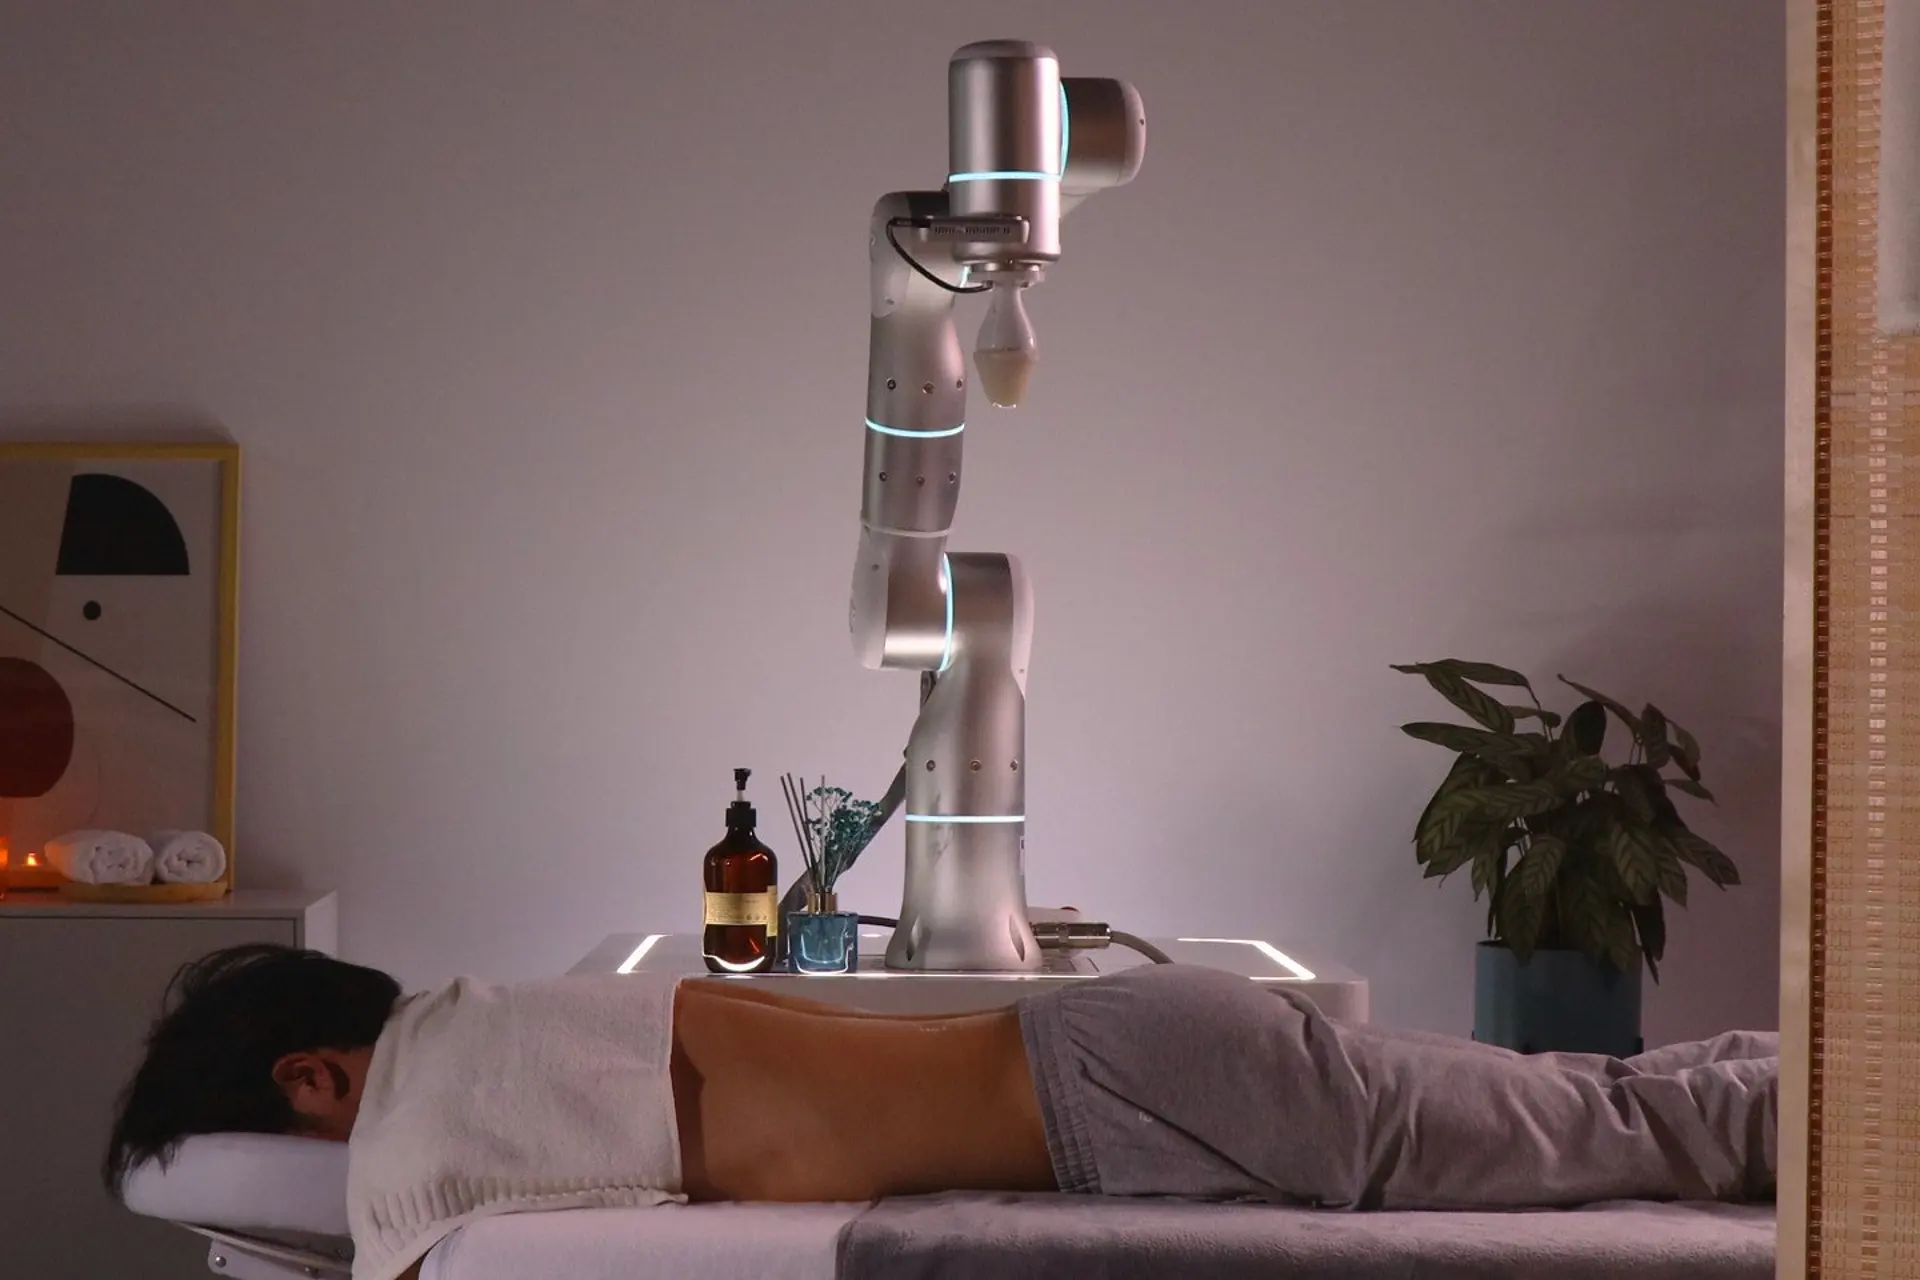 이런! 마사지사들 어쩌나!...마사지 로봇 나와 VIDEO: Rizon 4 Used in Robotic Massage